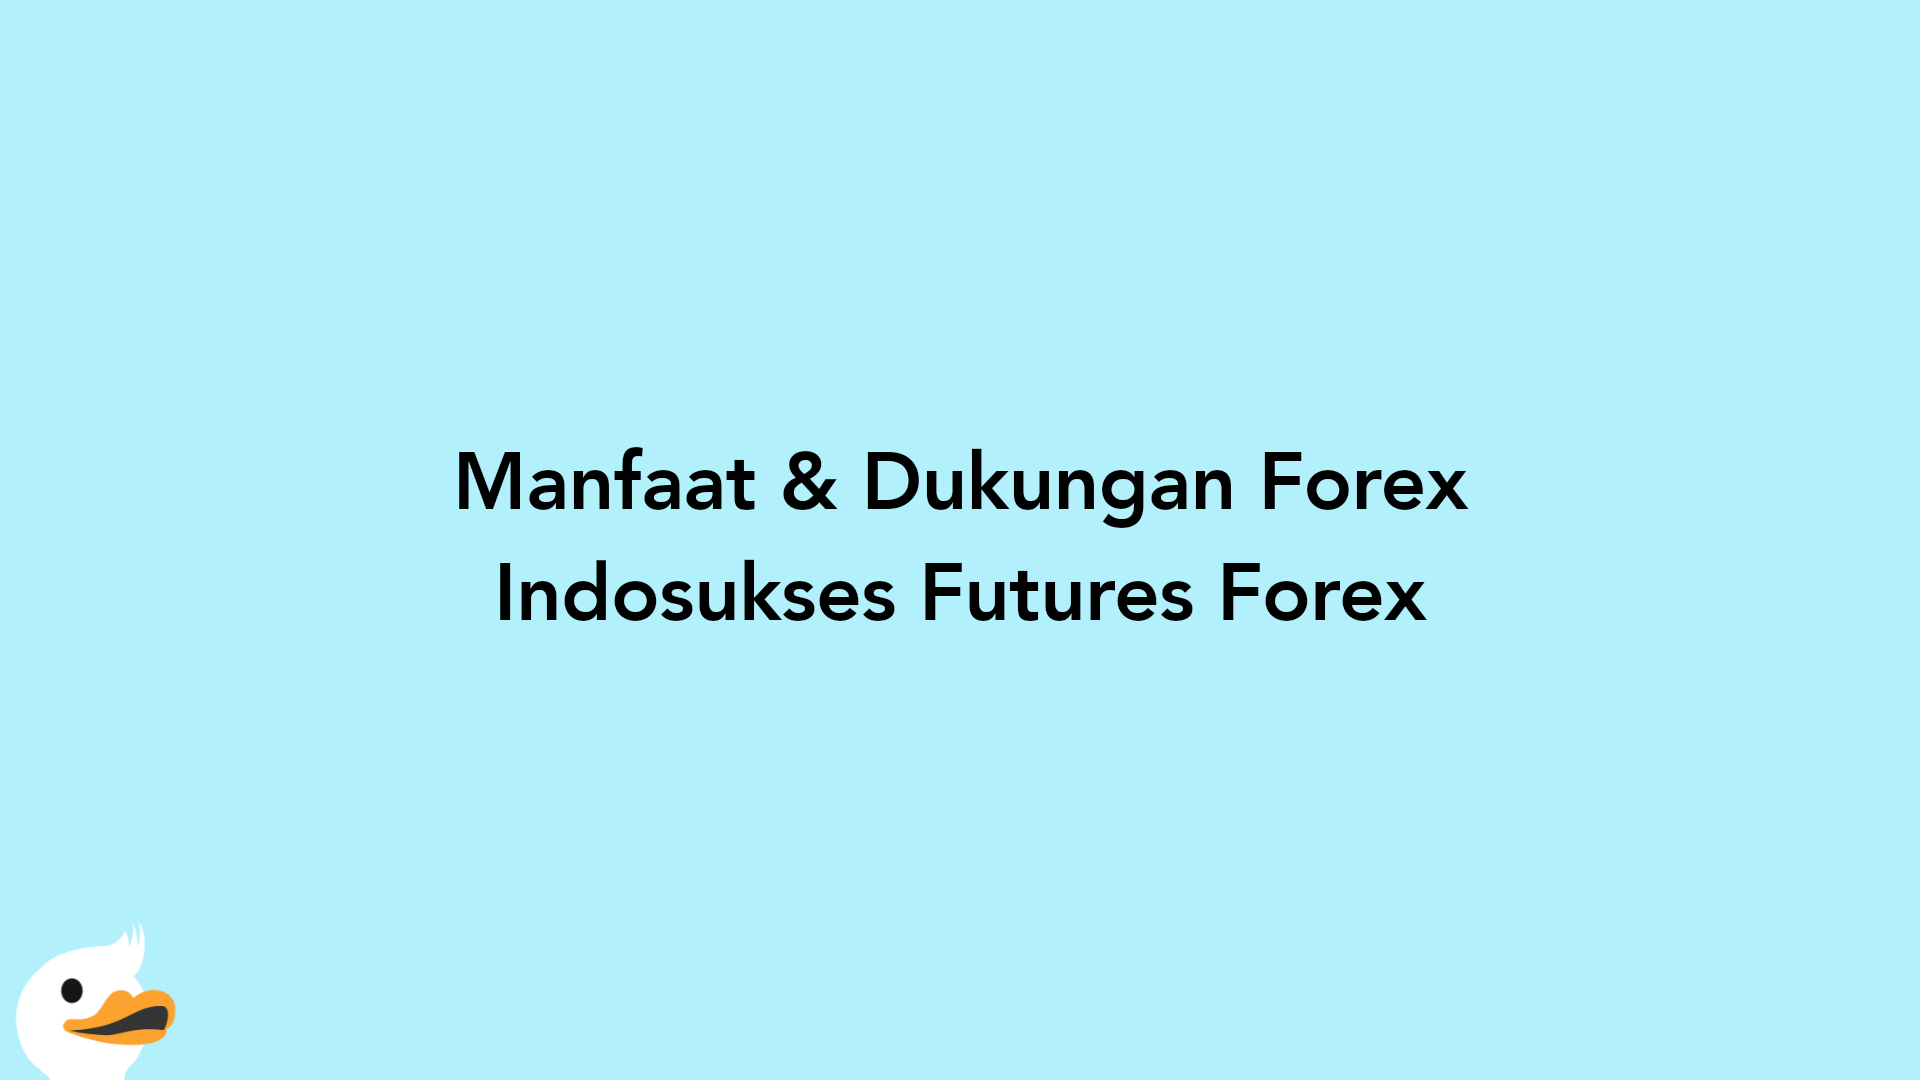 Manfaat & Dukungan Forex Indosukses Futures Forex